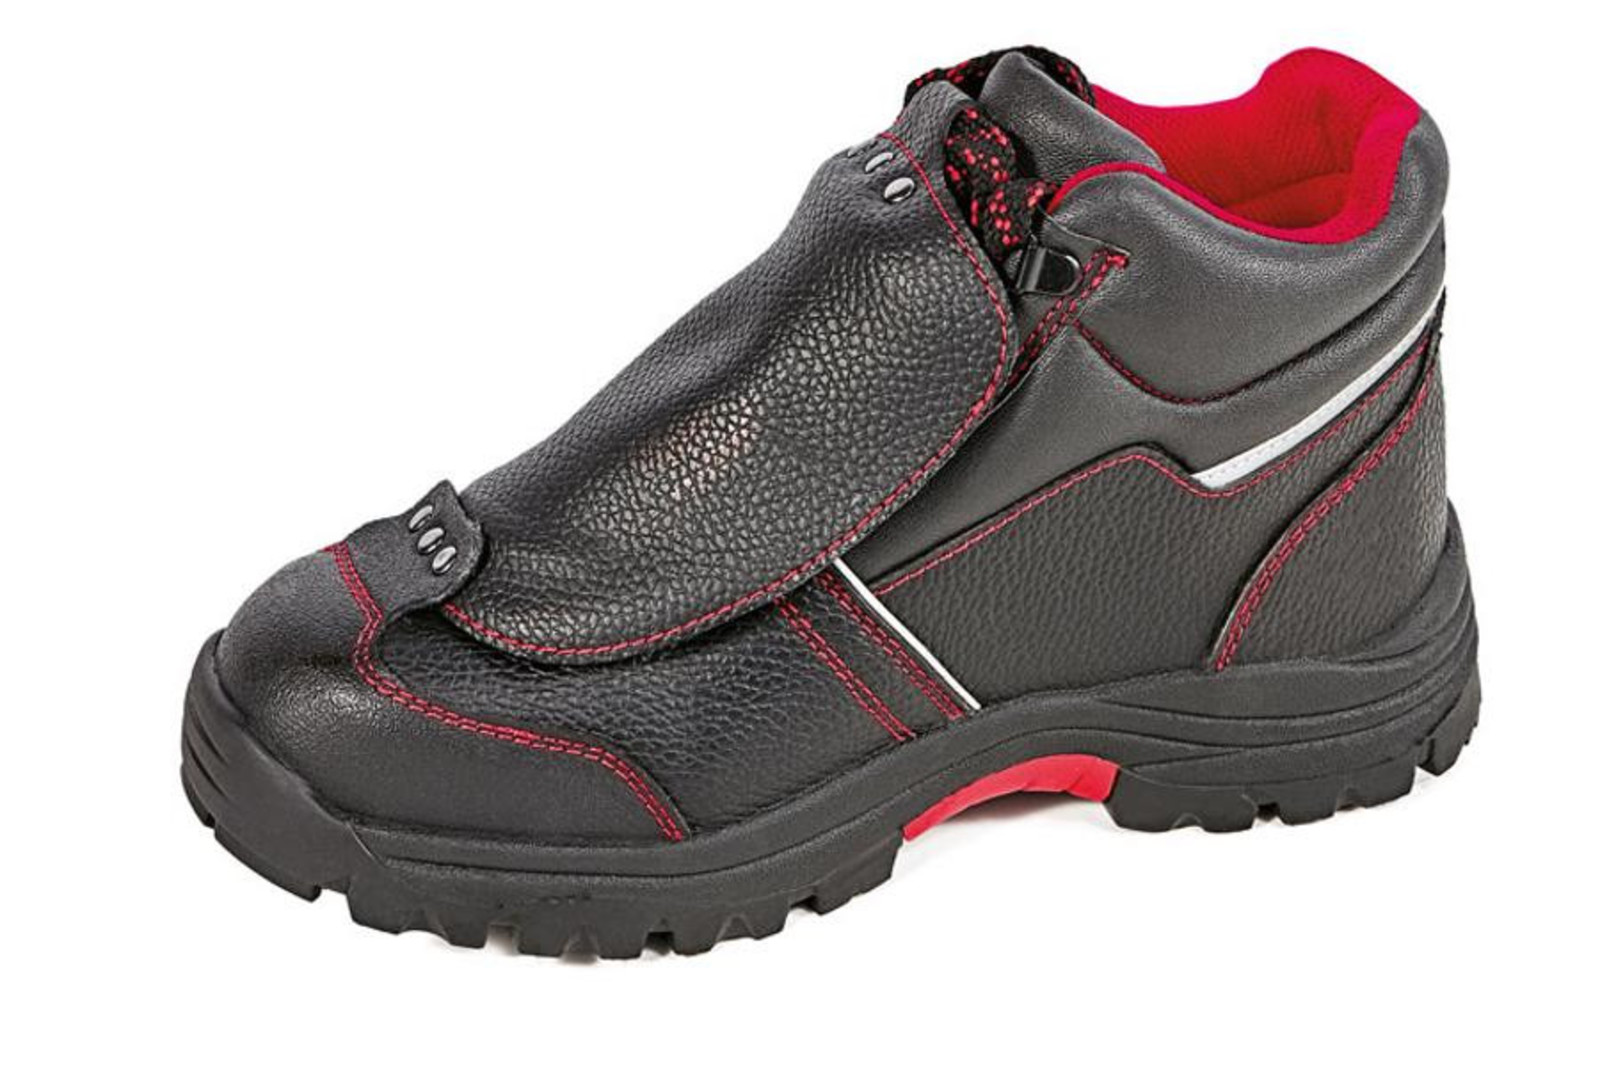 Bezpečnostná členková obuv Cerva Steeler Metatarsal S3 HRO M SRA  - veľkosť: 49, farba: čierna